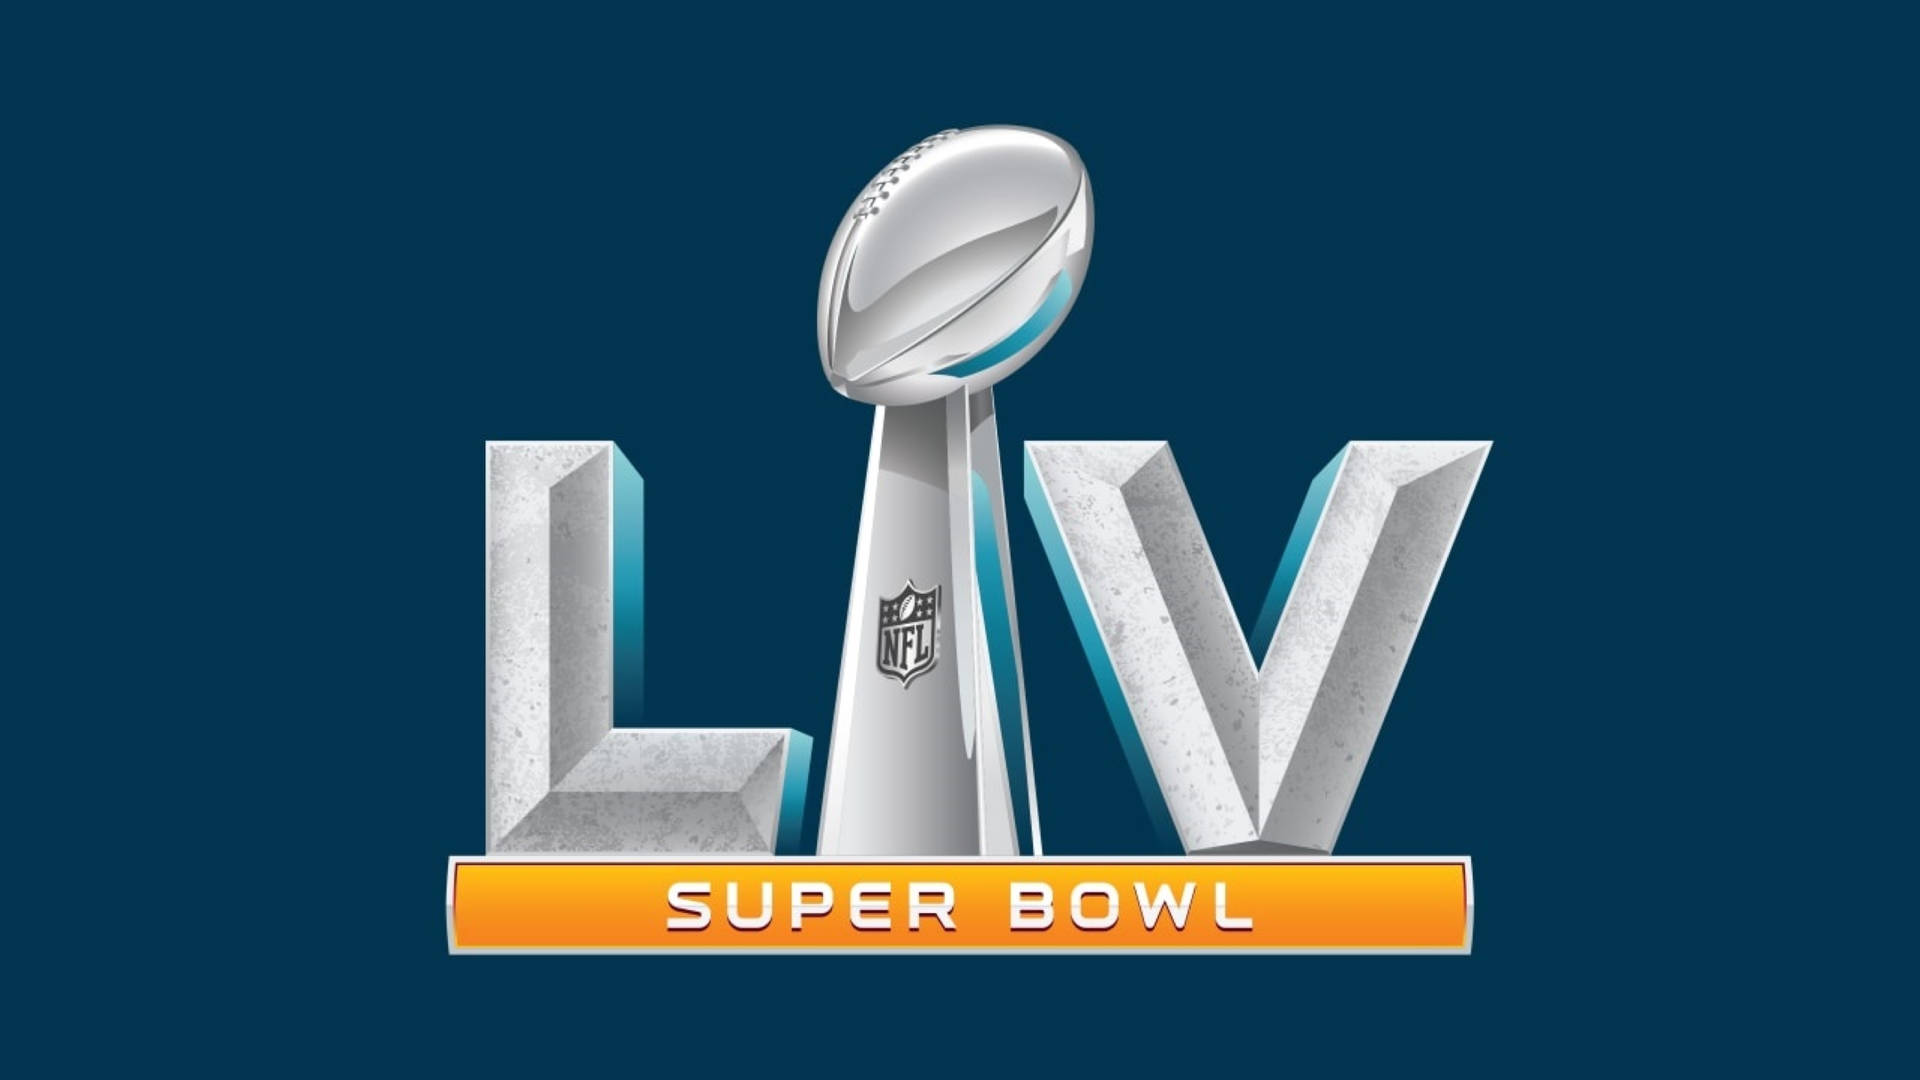 Super Bowl Lv 2021 Logo